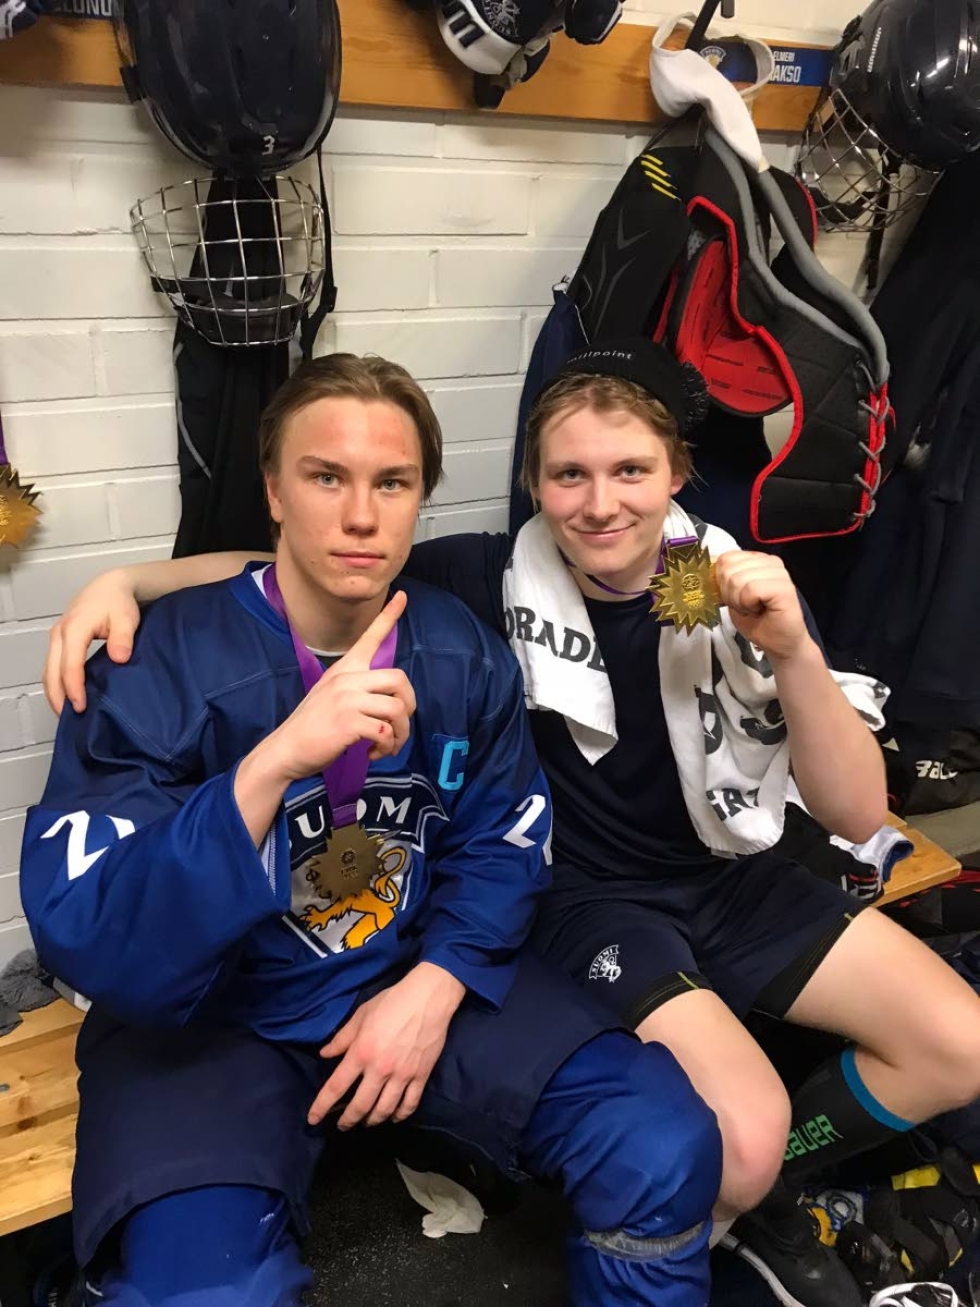 Jokipoikien kasvatit Aleksanteri Kaskimäki (vas.) ja Elmeri Laakso saivat kultaiset mitalit kaulaansa Nuorten olympiafestivaalien kiekkoturnauksen päätteeksi.